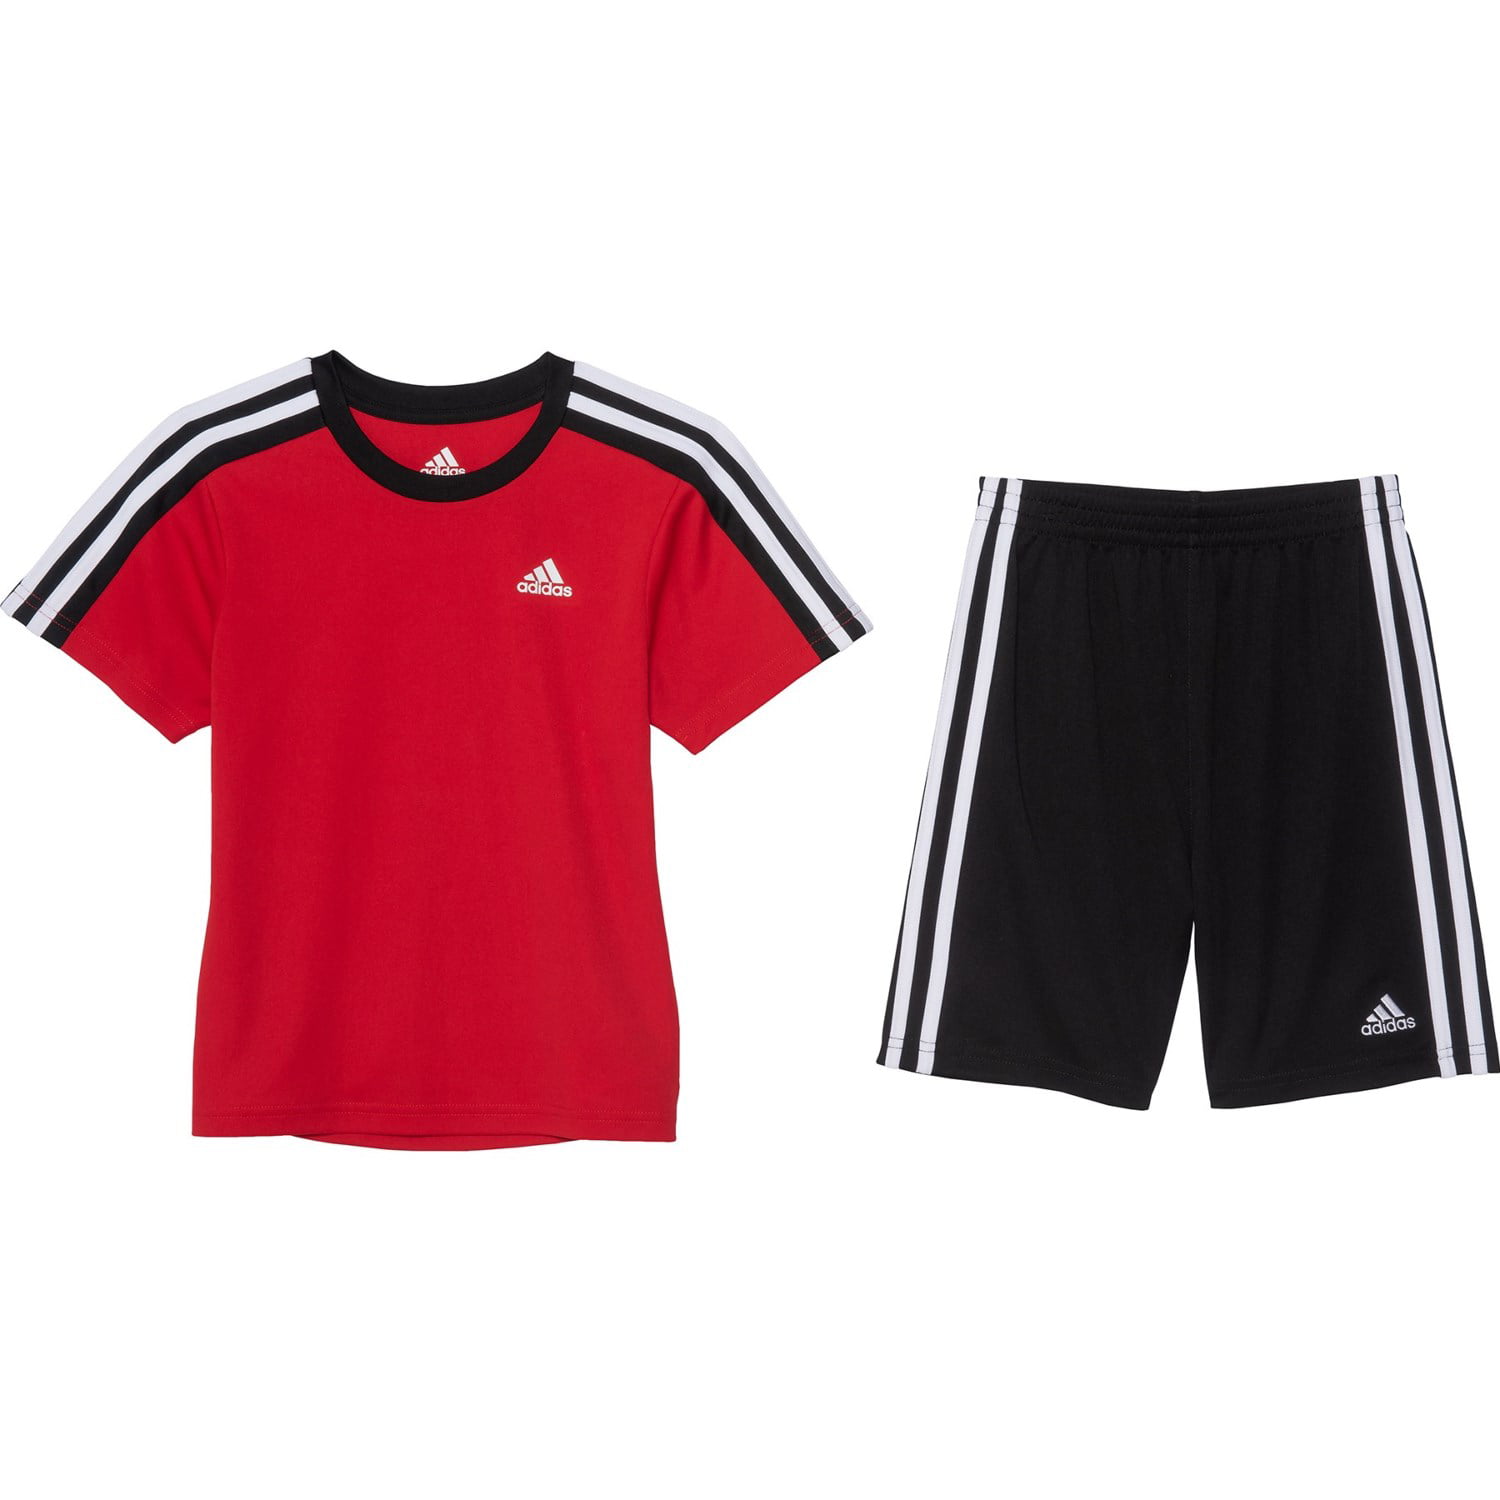 Adidas - Adidas Boys' T-Shirt and Short Sets - Short Sleeves - Sizes 4 ...